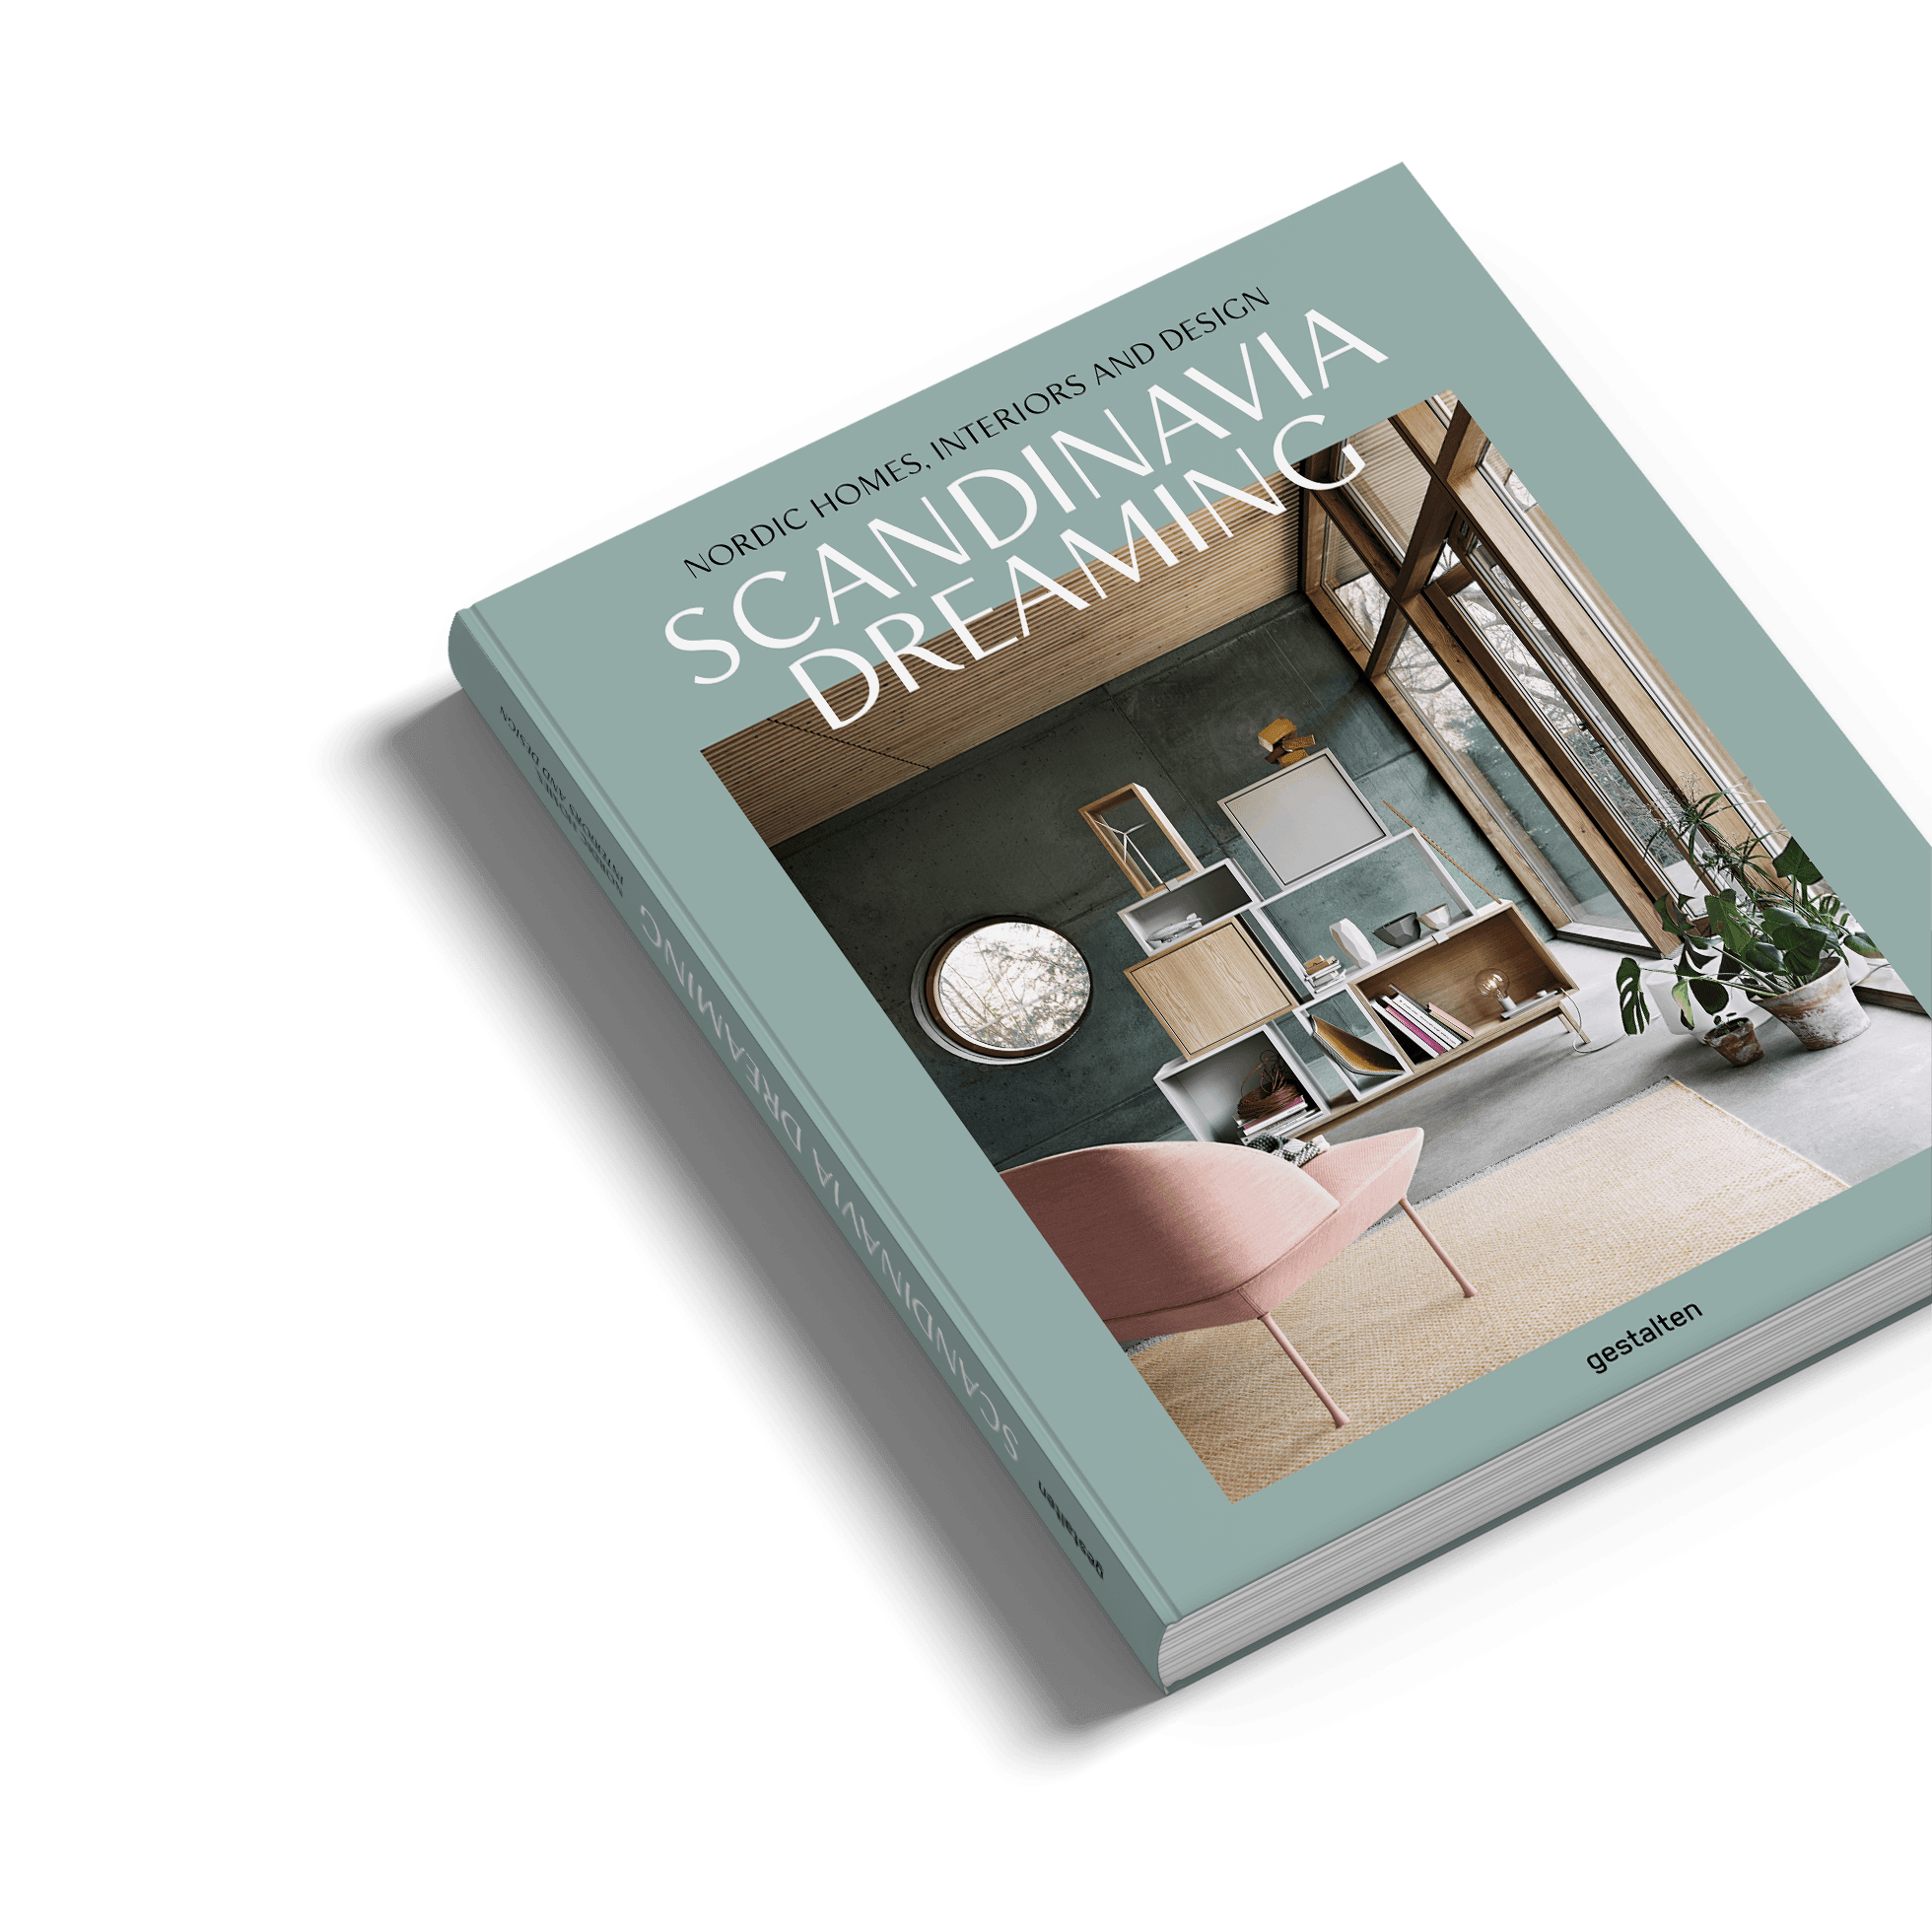 Gestalten - Scandinavia Dreaming - Nordic Homes, Interiors and Design - noord®